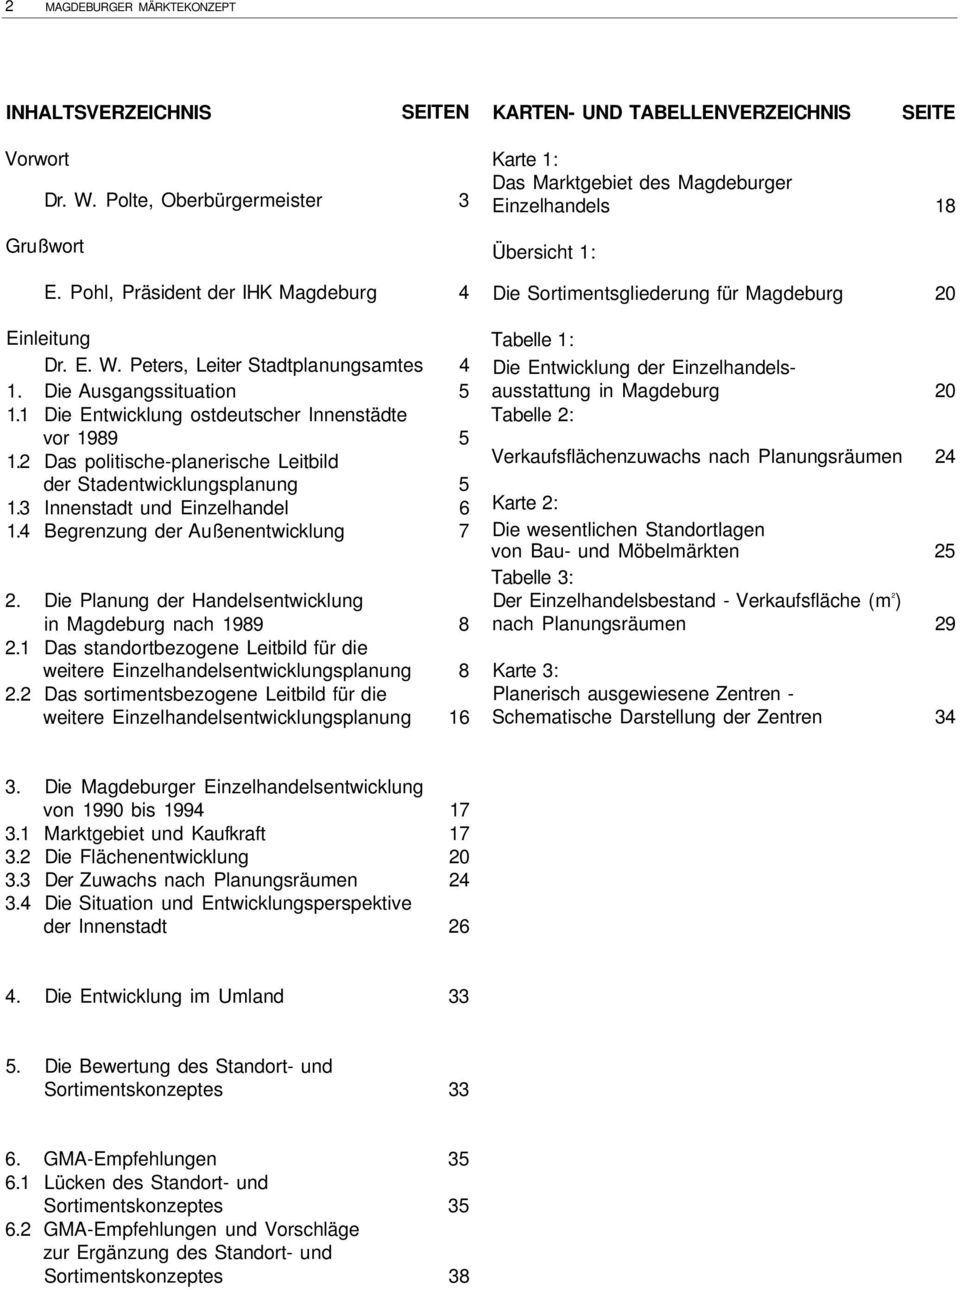 4 Begrenzung der Außenentwicklung 7 2. Die Planung der Handelsentwicklung in Magdeburg nach 1989 8 2.1 Das standortbezogene Leitbild für die weitere Einzelhandelsentwicklungsplanung 8 2.